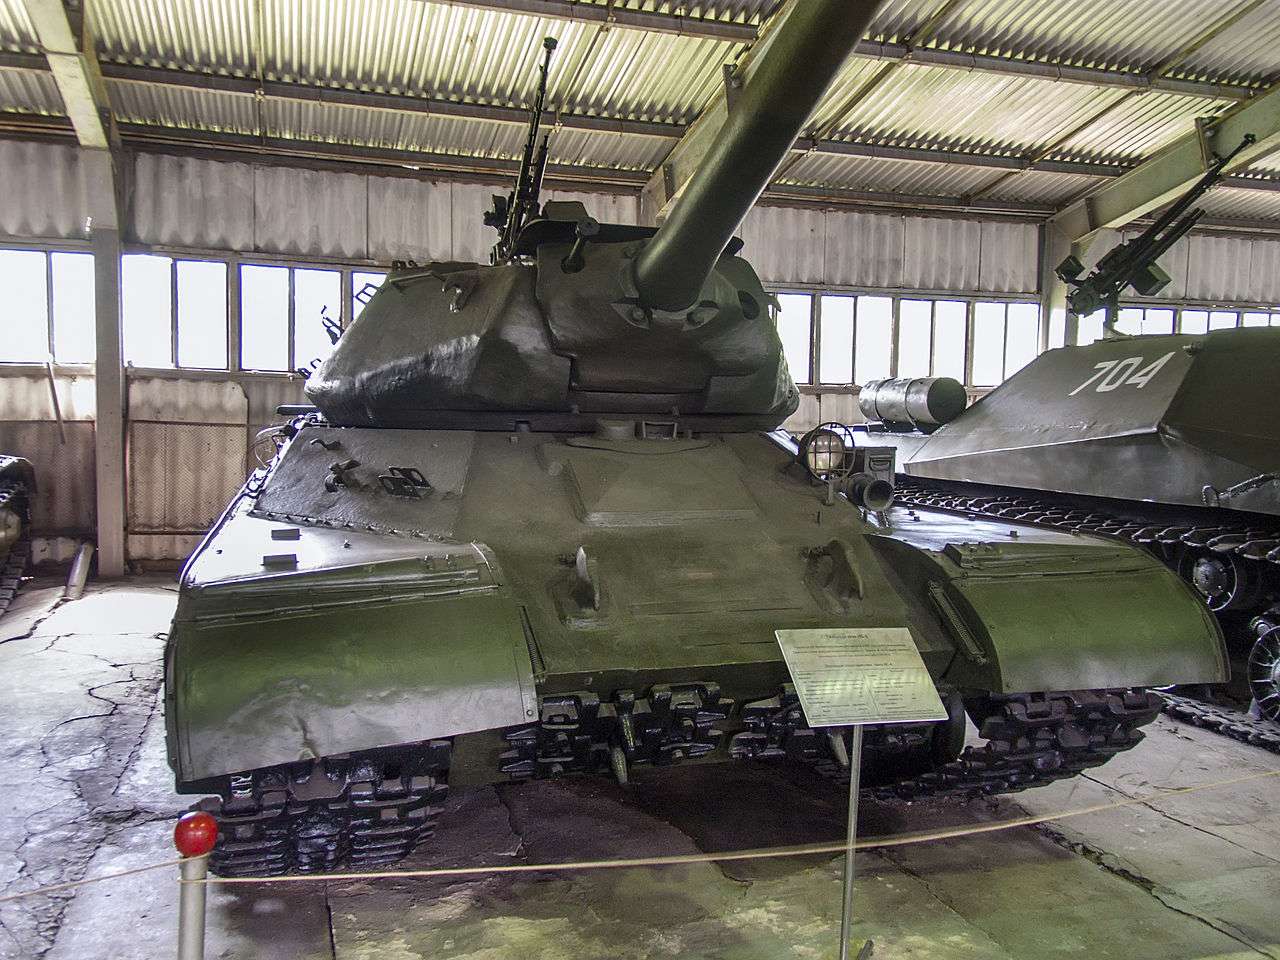 IS-4 heavy tank in Russia.